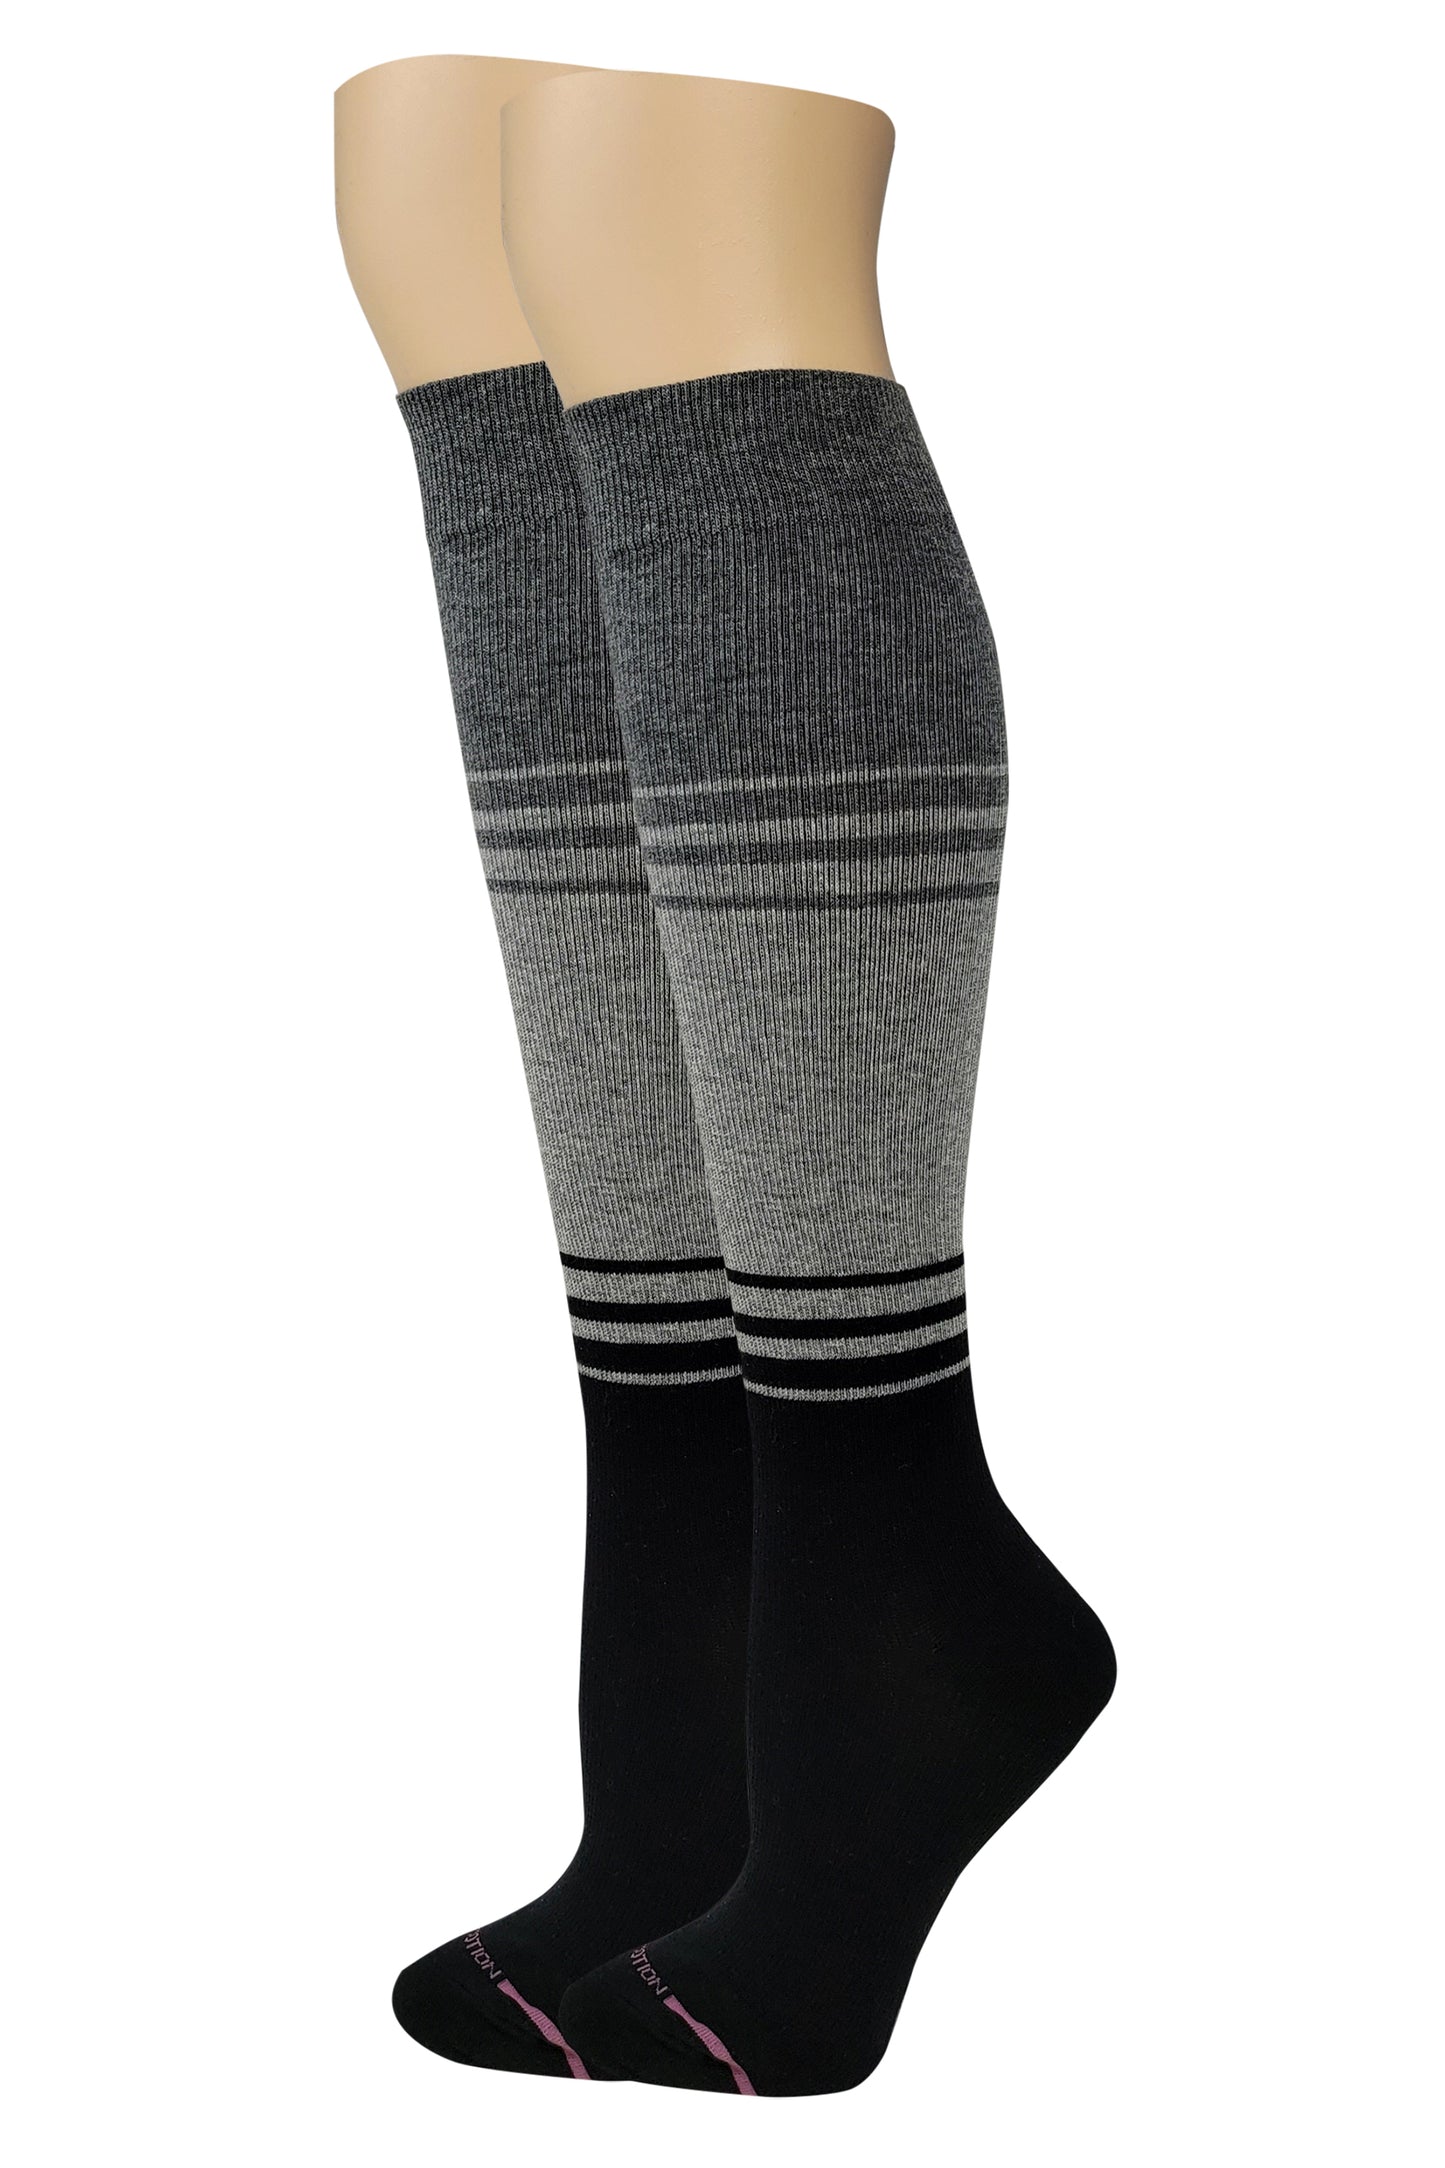 Dr. Motion Women Colorblock Design Compression Knee High Socks